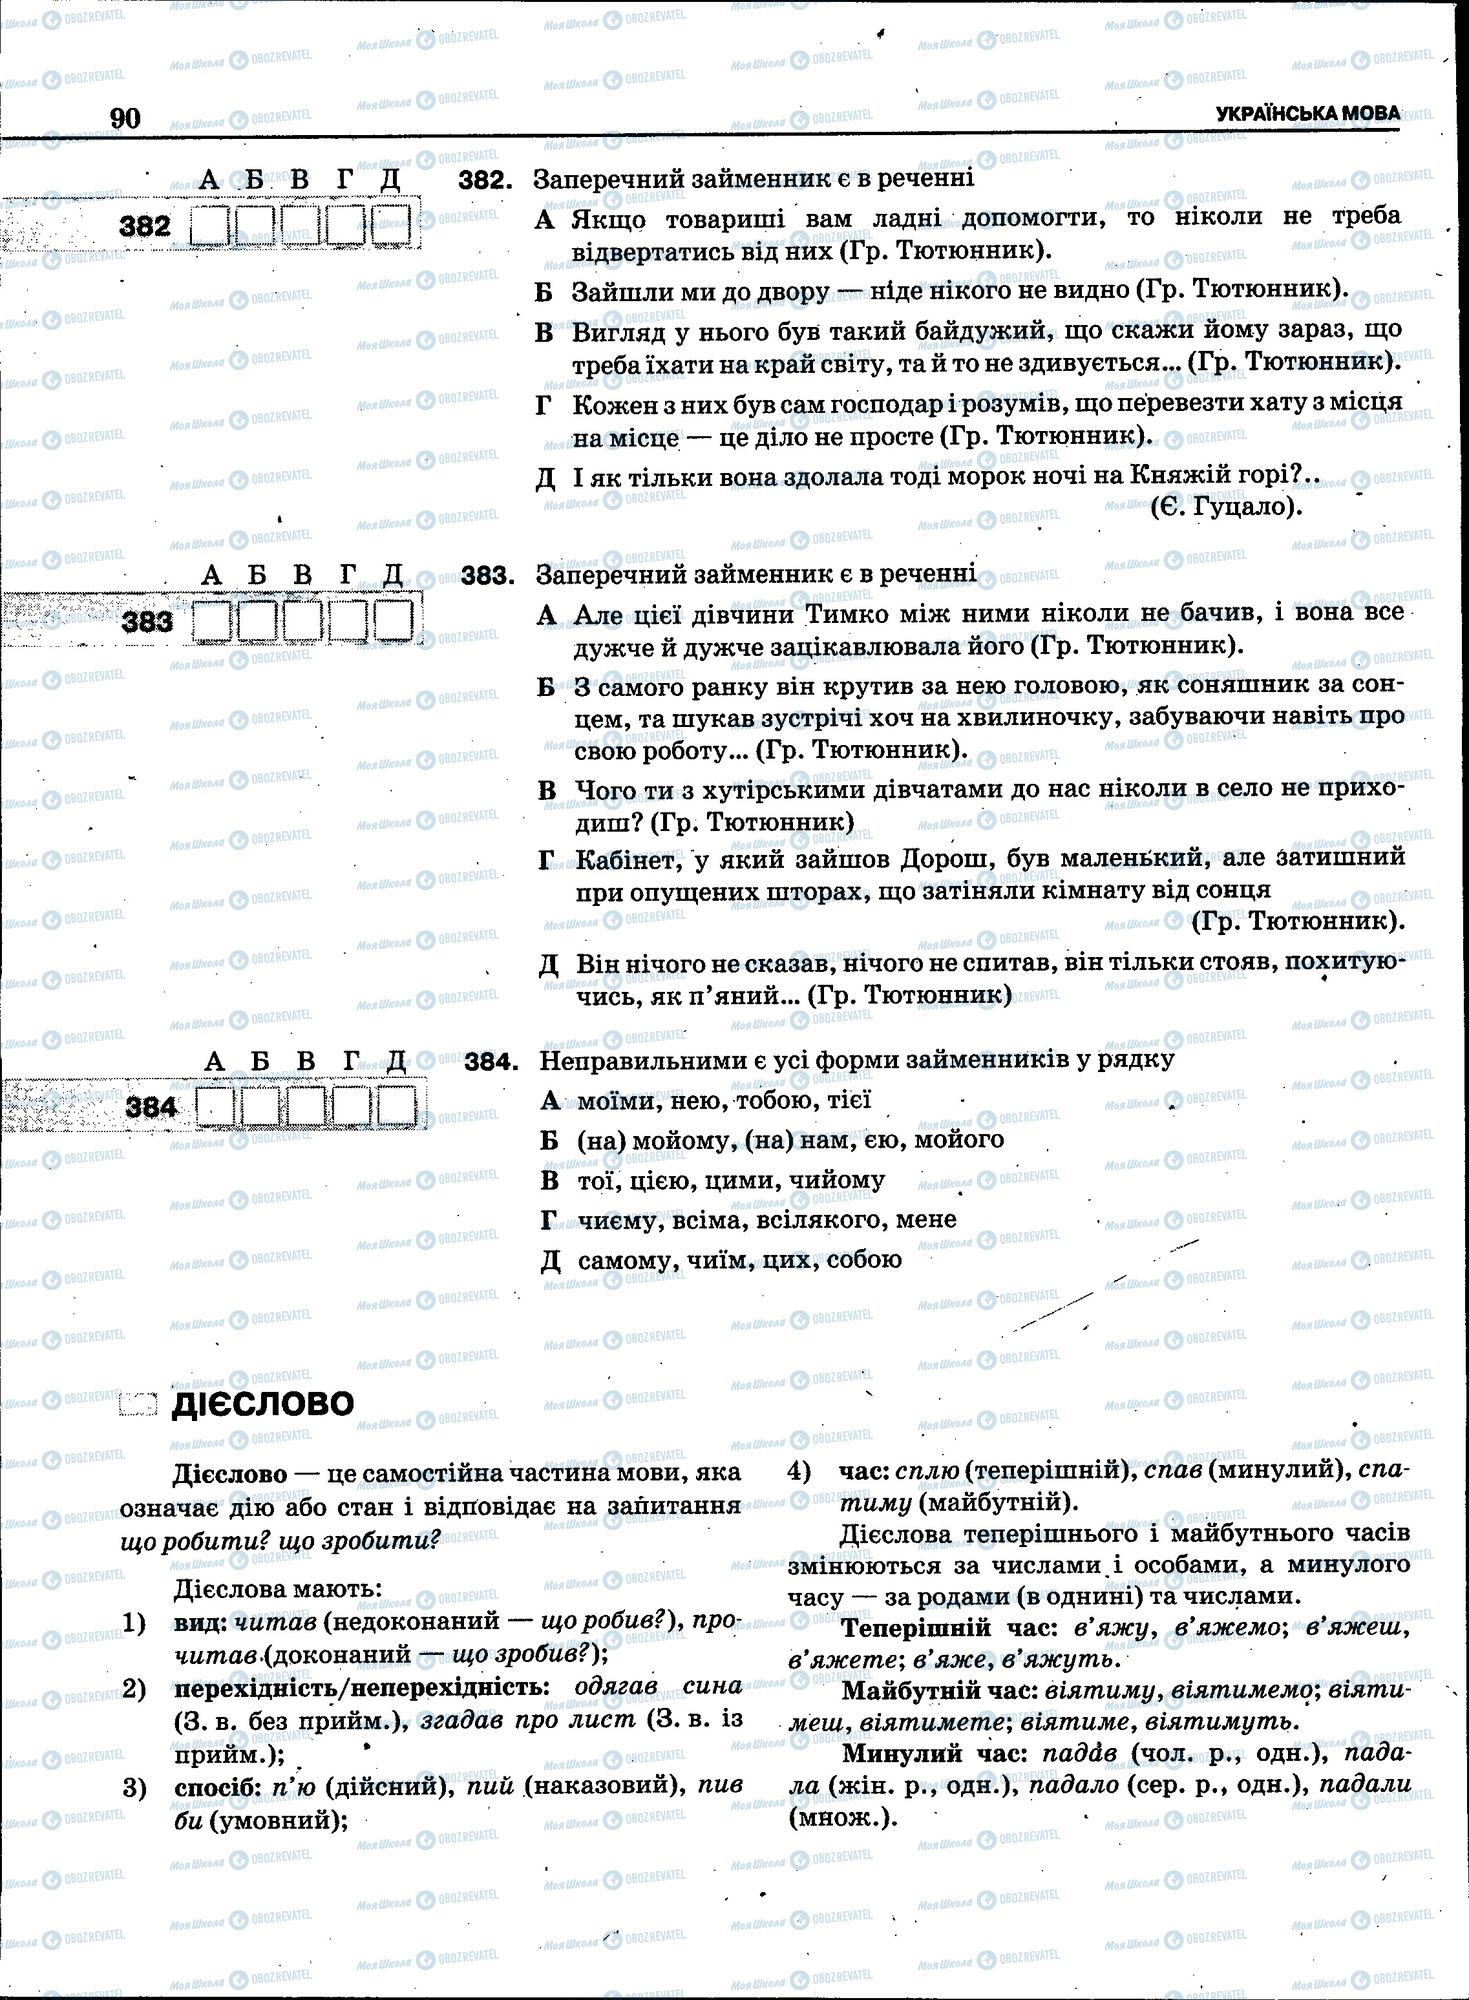 ЗНО Укр мова 11 класс страница 088